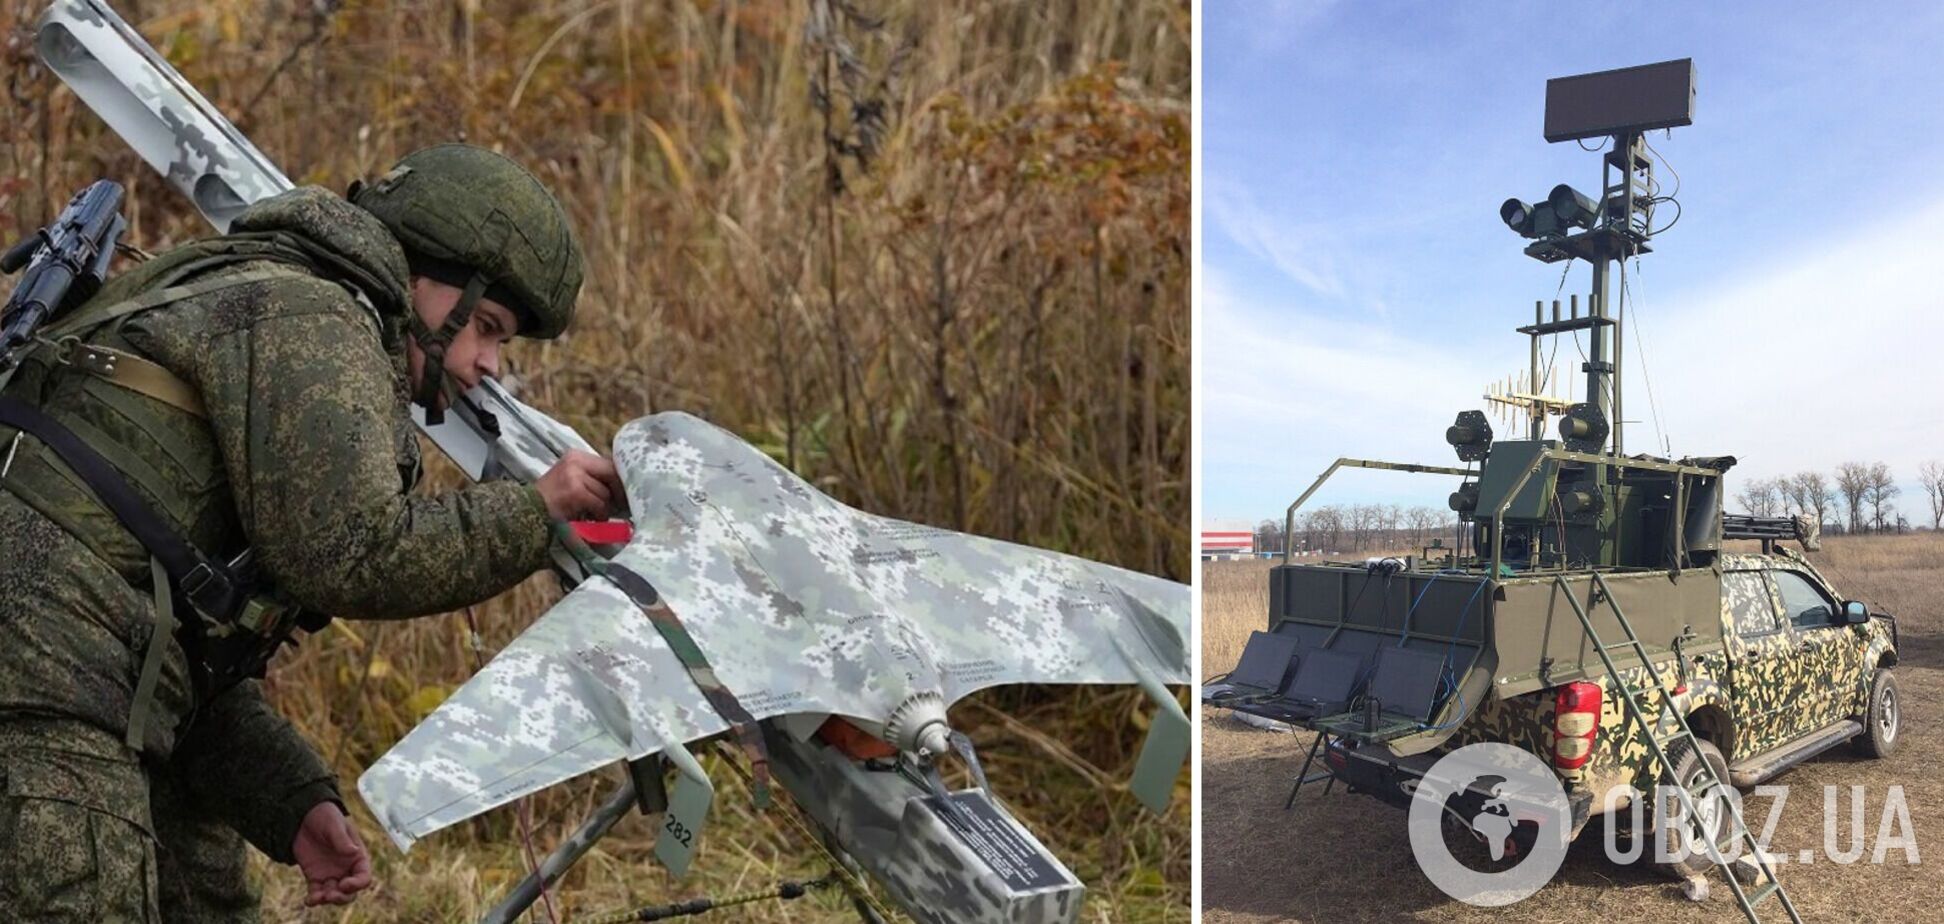 Армия РФ начала использовать в Украине 'умные' дроны с машинным зрением, – эксперт